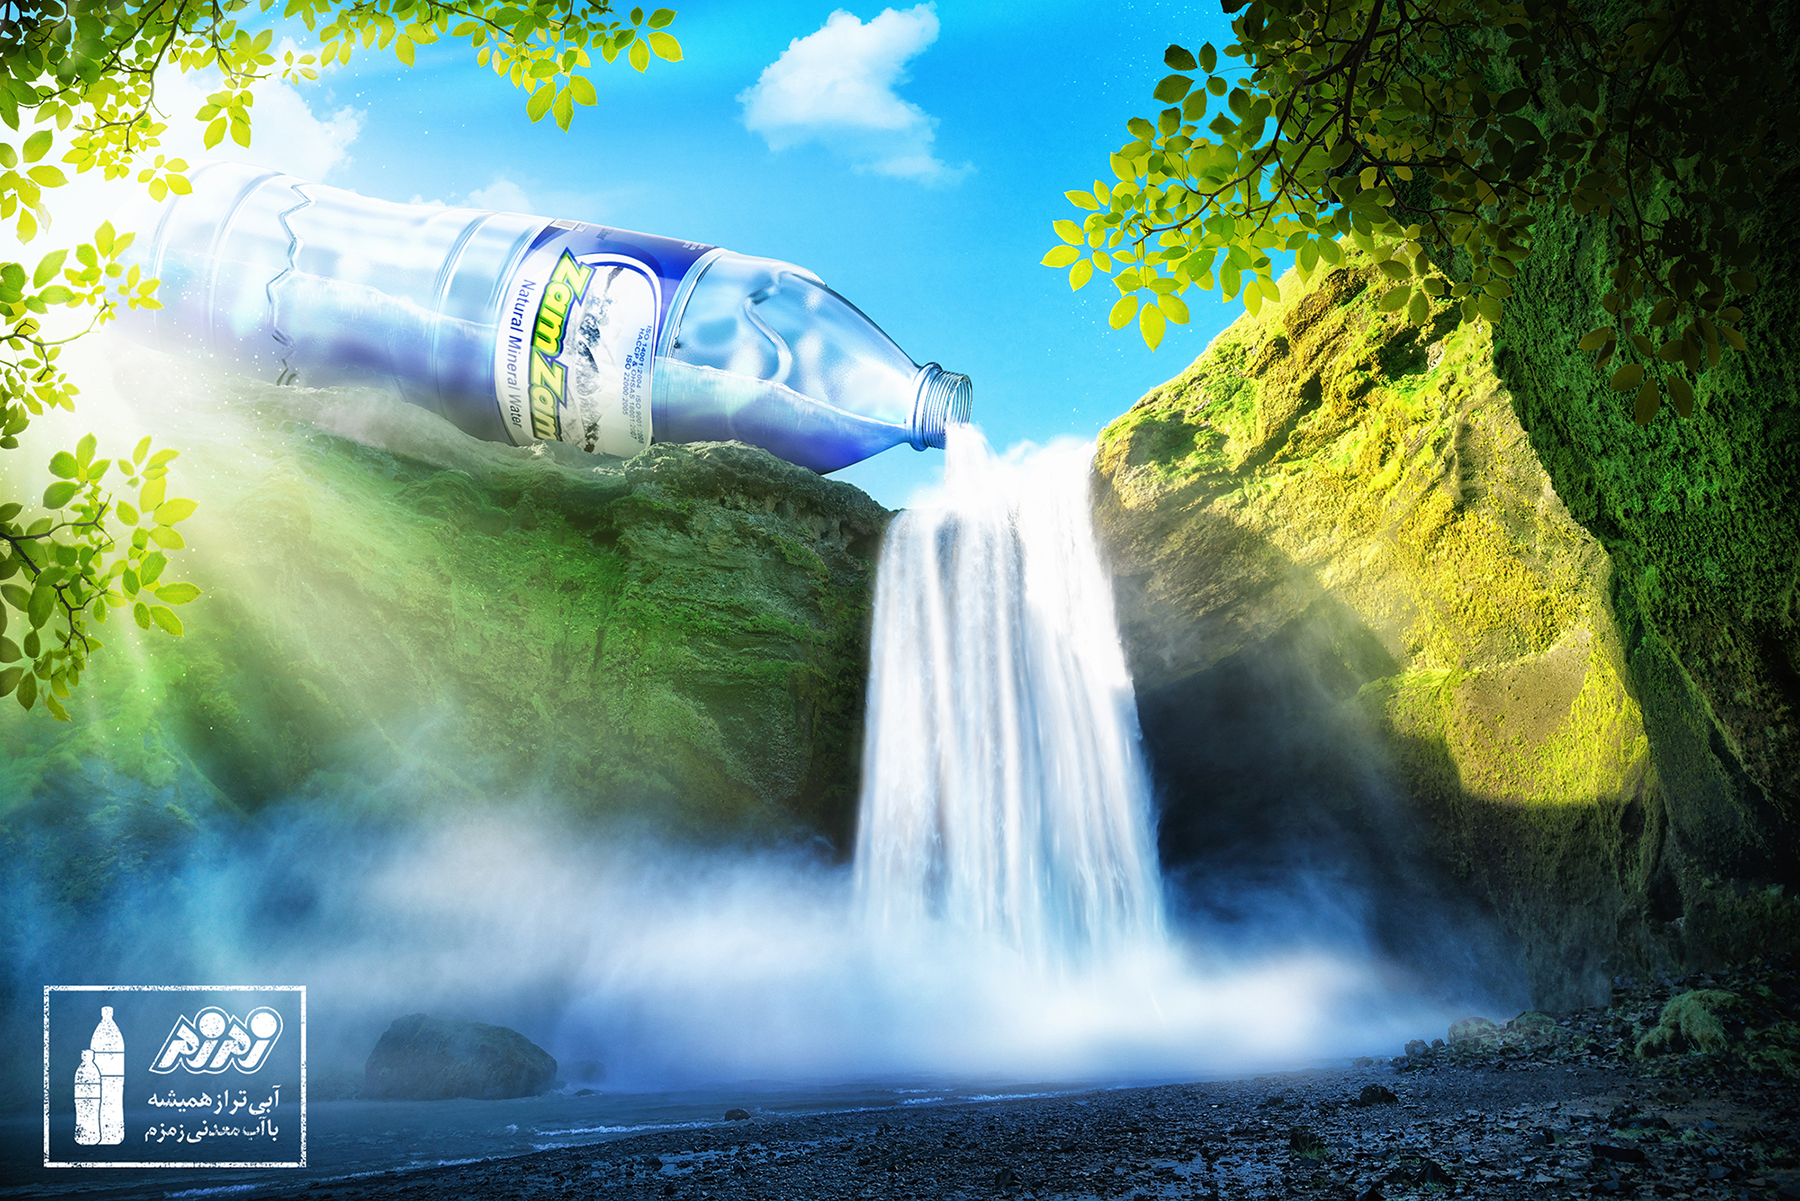 Соседская вода. Реклама воды. Природная вода. Реклама минеральной воды. Чистая вода.